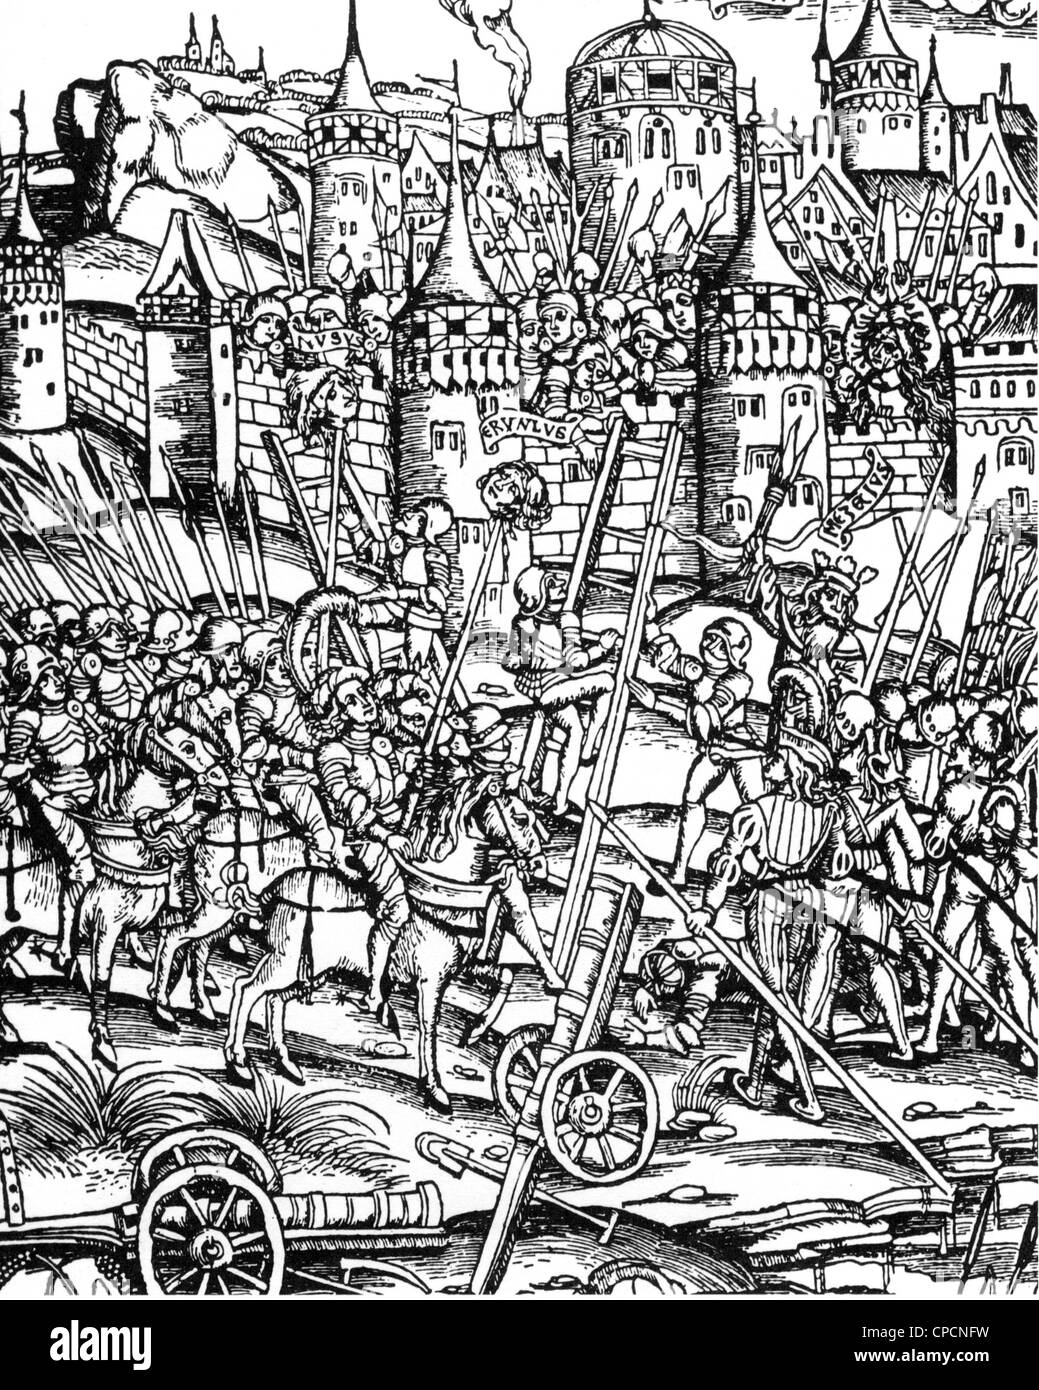 La guerra de sitio medieval Foto de stock